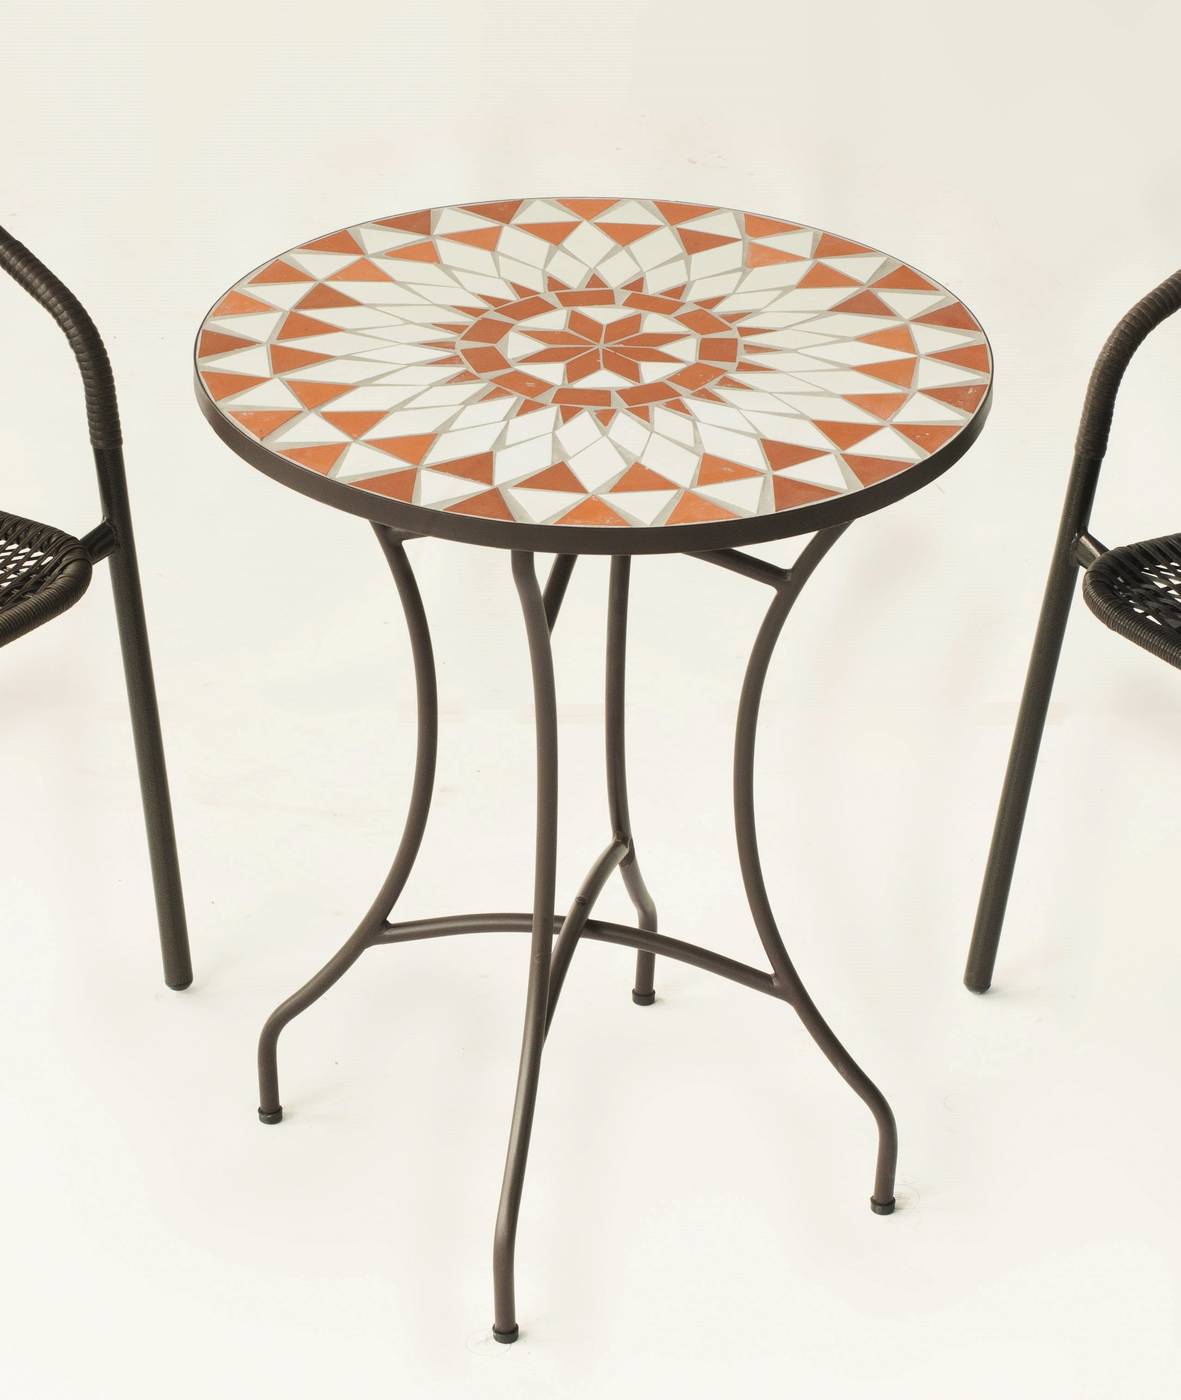 Conjunto Mosaico Neypal-Marsel - Mesa de forja color bronce, con tablero mosaico de 60 cm + 2 sillones apilables de aluminio con cojín.